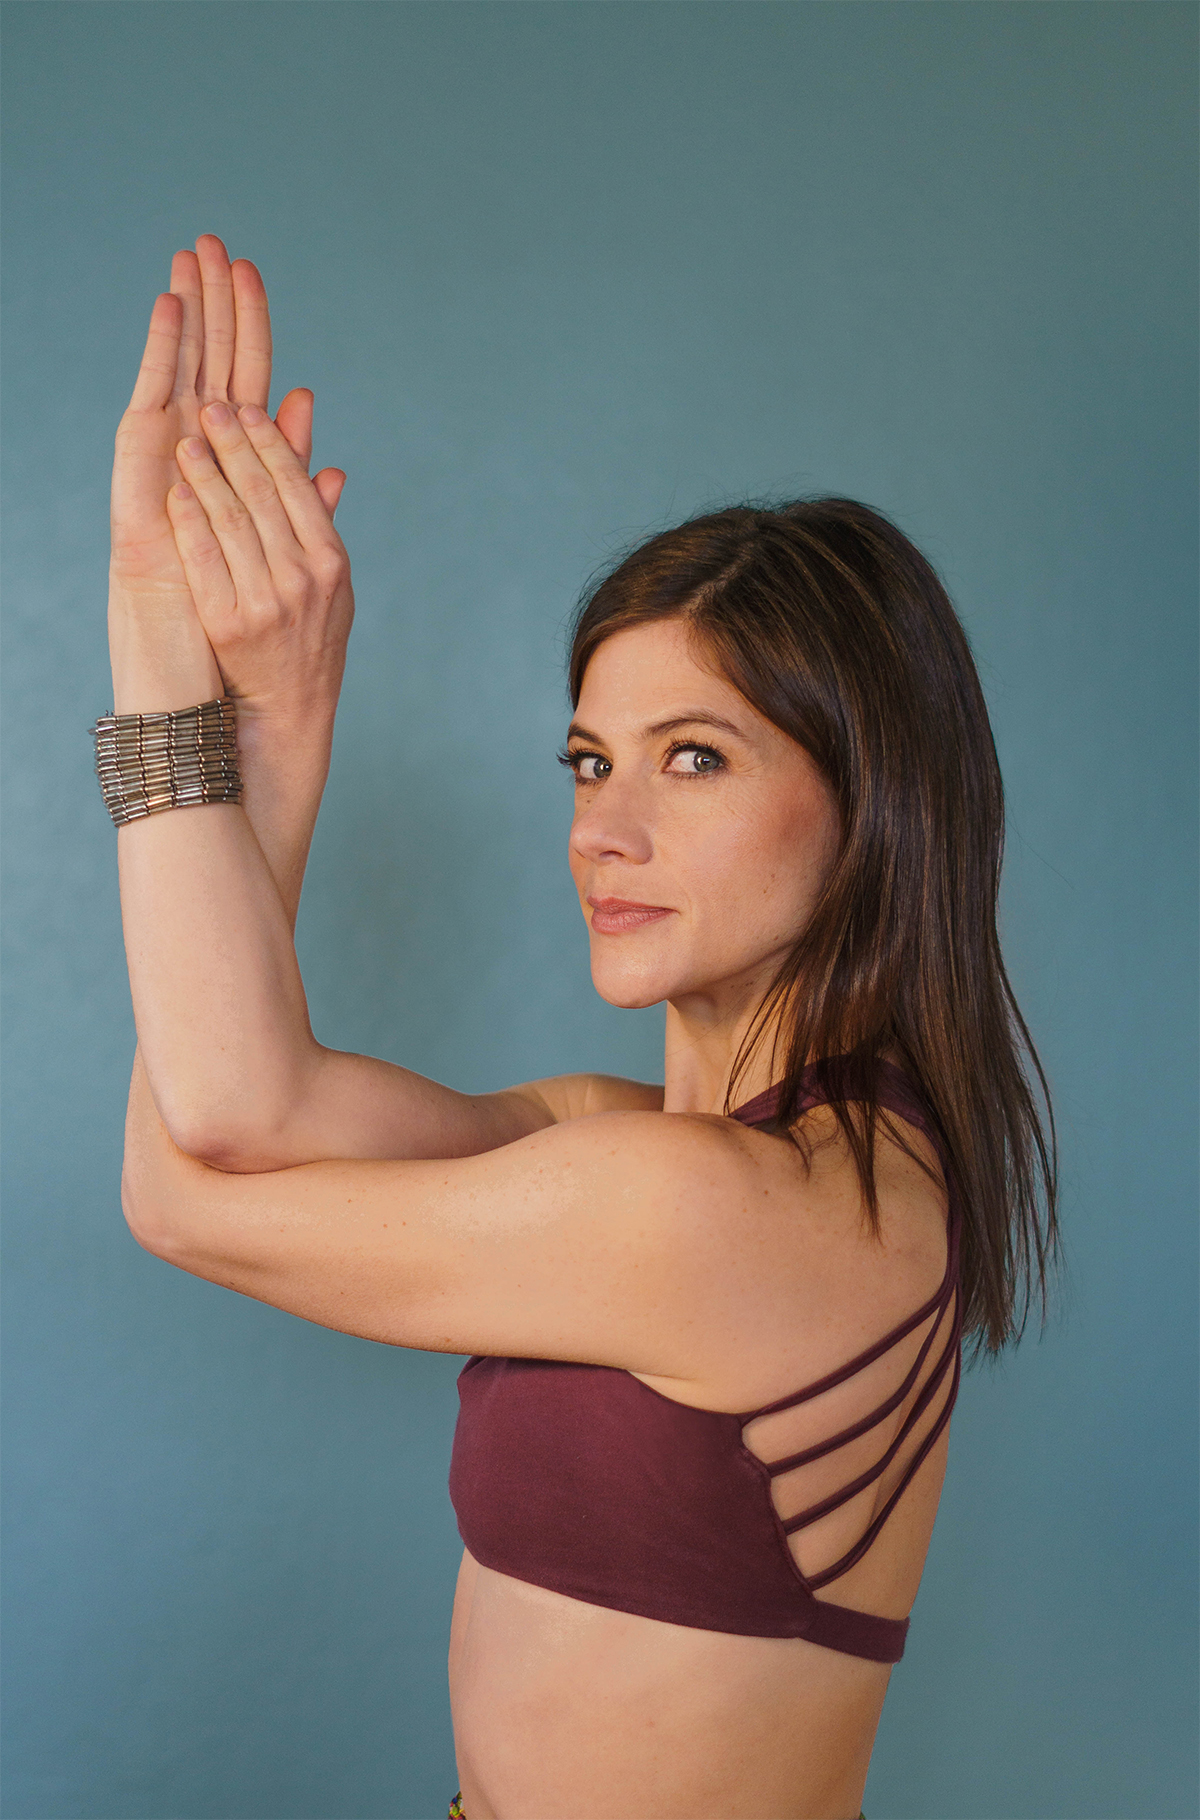 De Amerikaanse Laura Burkhart: 'Yoga leerde me afstand nemen van pijn'